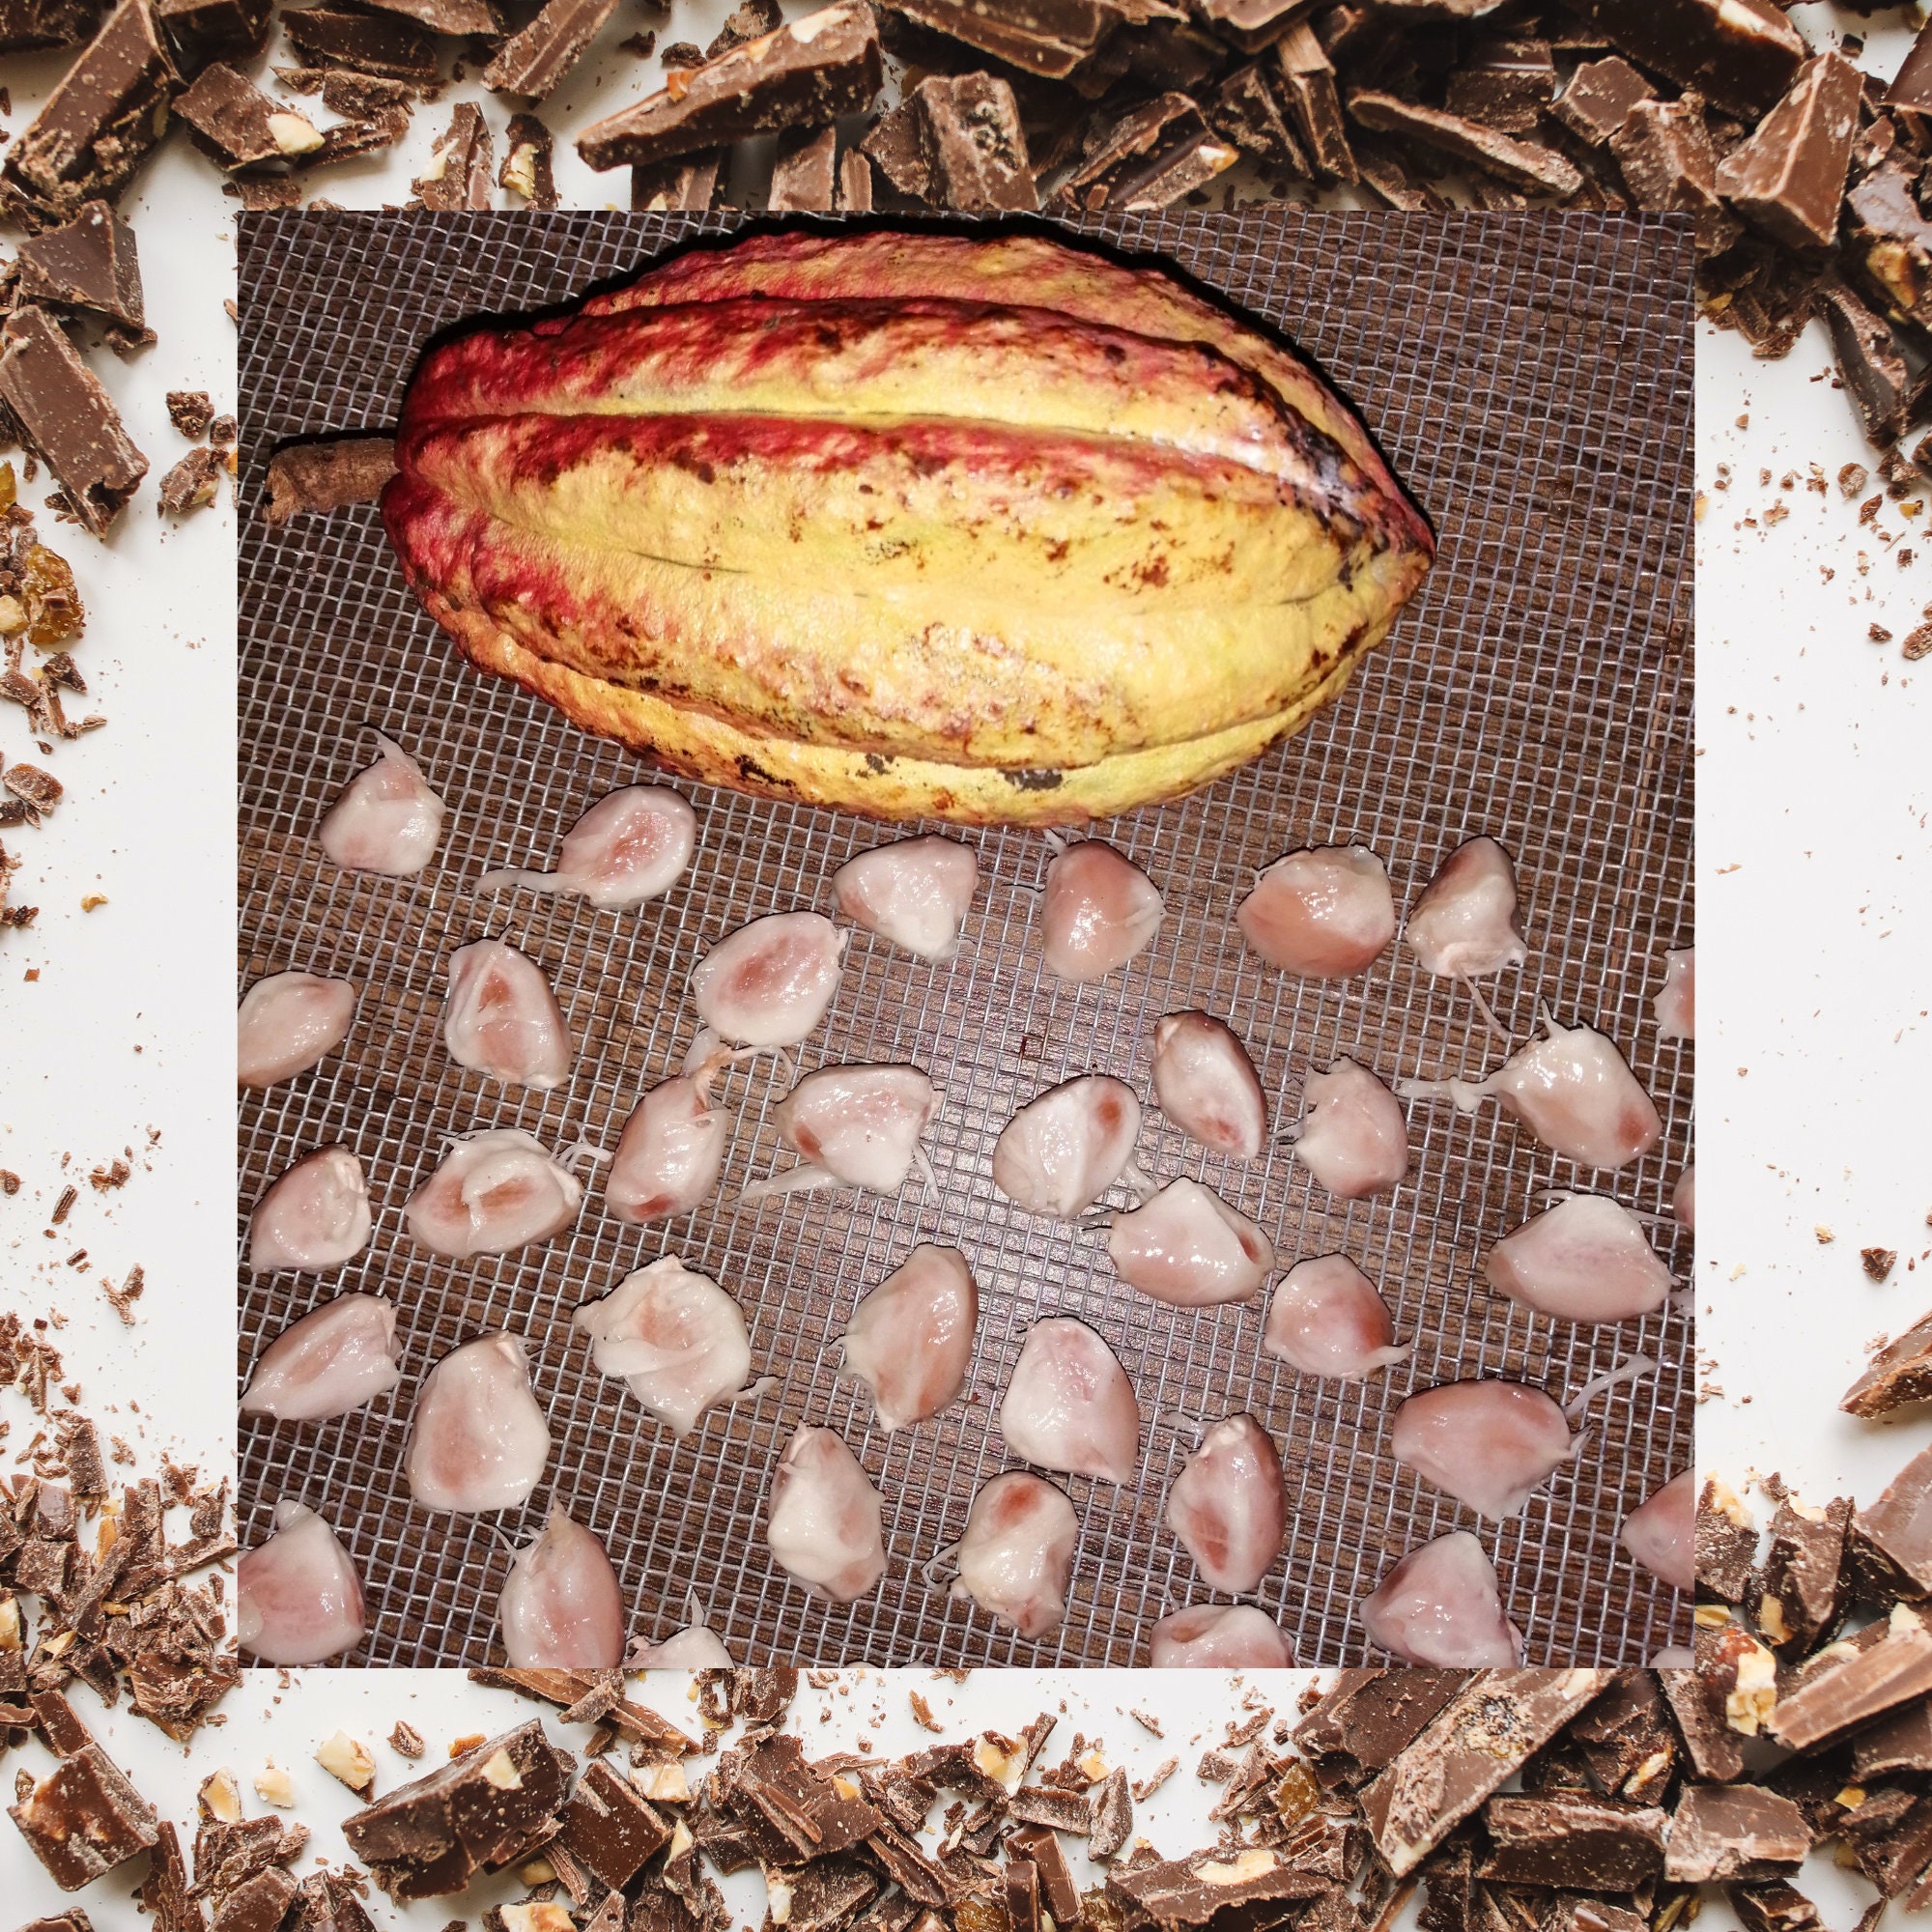 Kakao Frön (Theobroma cacao) - Pris €4.00